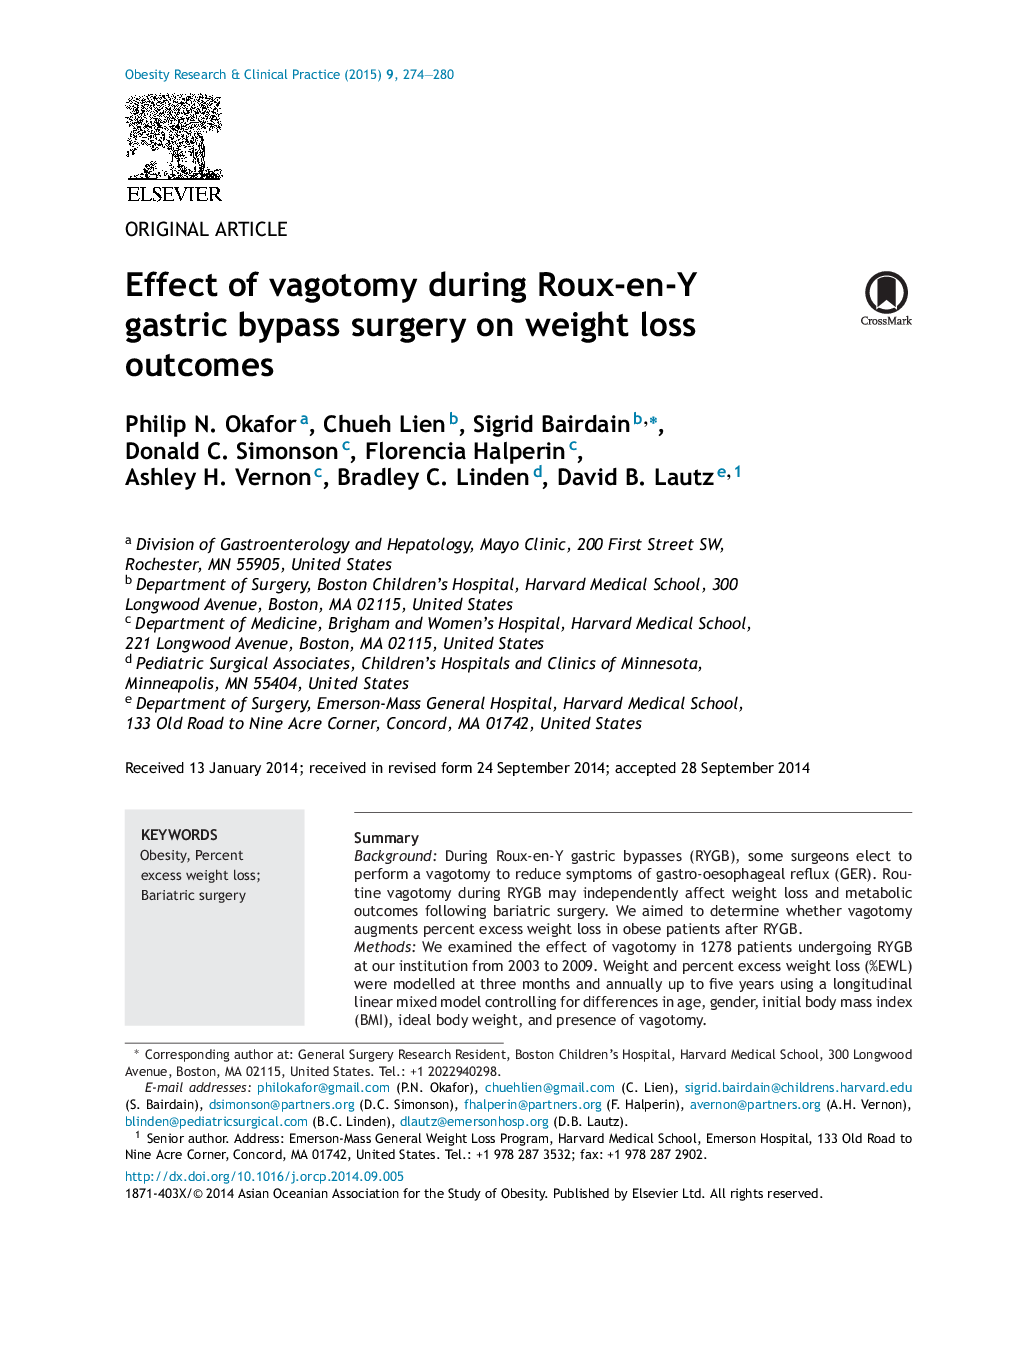 تأثیر واژینیت در جراحی بای پس معده روده-ان-یوگا بر پیامدهای کاهش وزن 